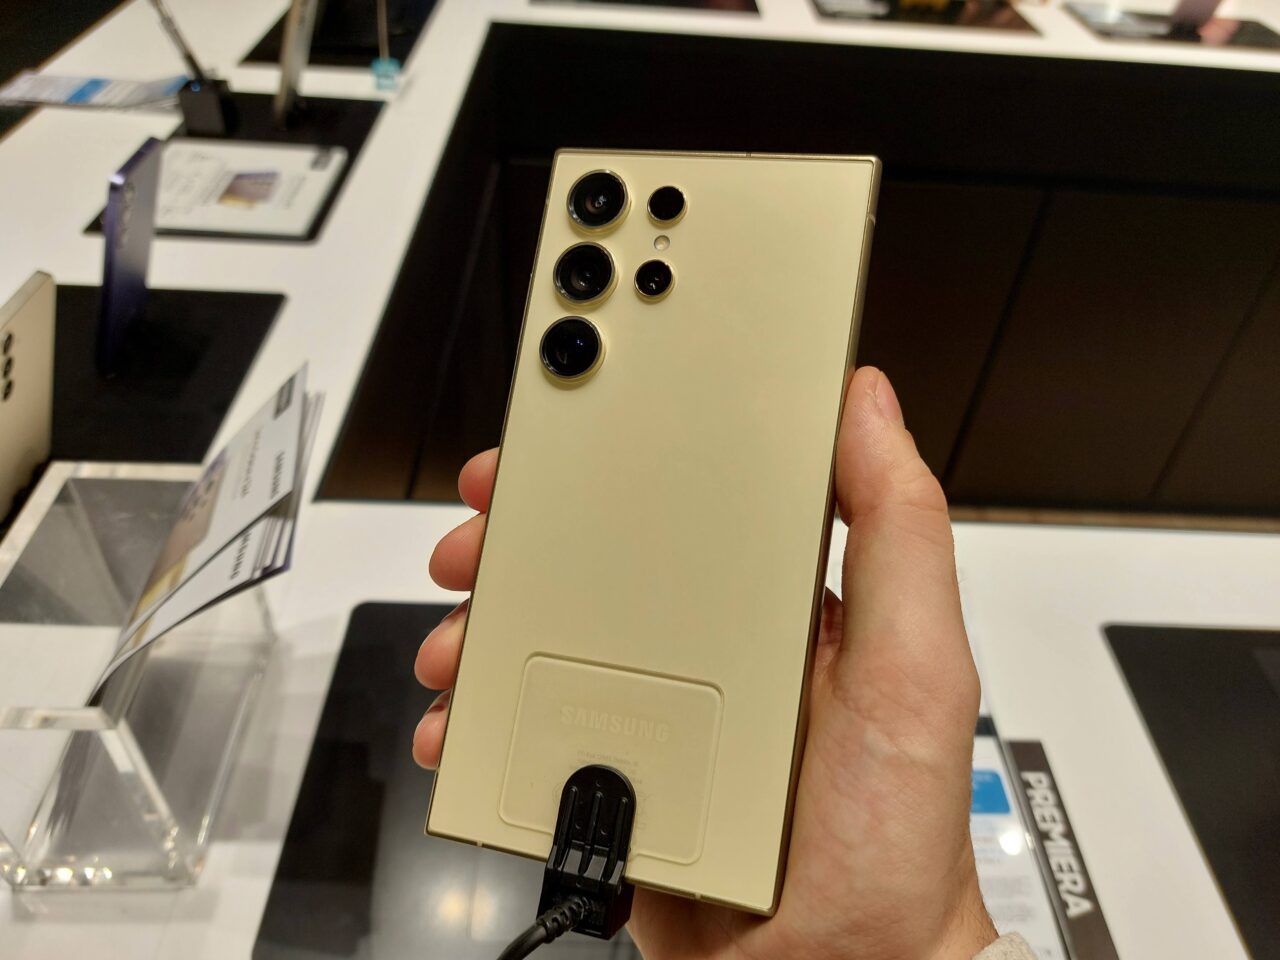 Ręka trzymająca złoty smartfon Samsung z pięcioma obiektywami aparatu ustawionymi w dwóch rzędach, podłączonego kablem do ekspozycji w sklepie.